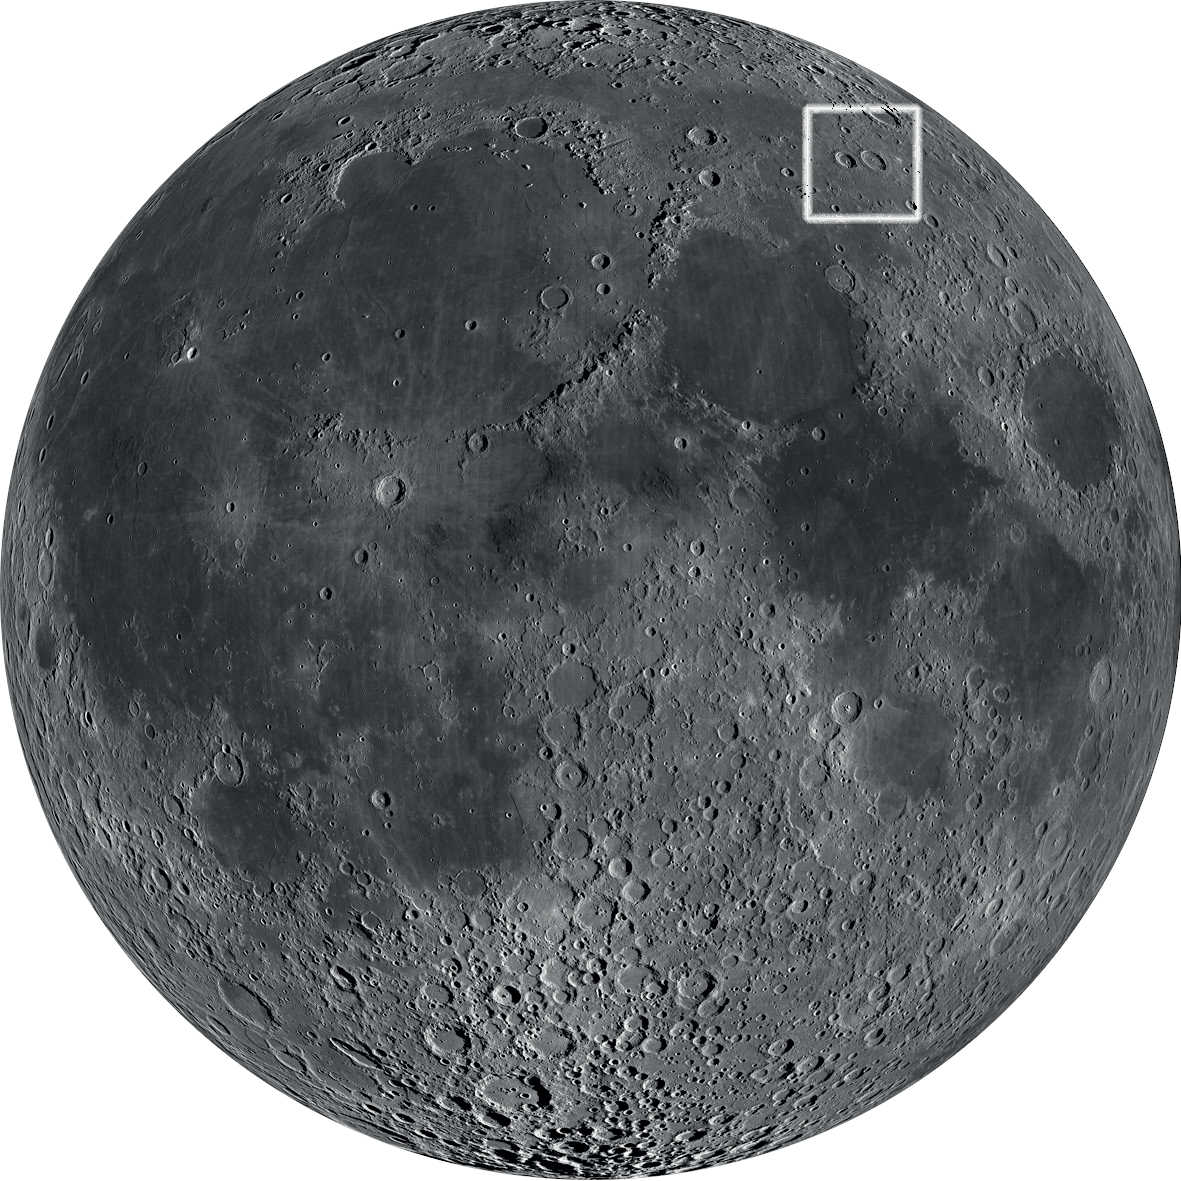 L’attrayant duo de cratères se trouve dans le quadrant nord-est de la Lune. NASA/GSFC/Arizona State University